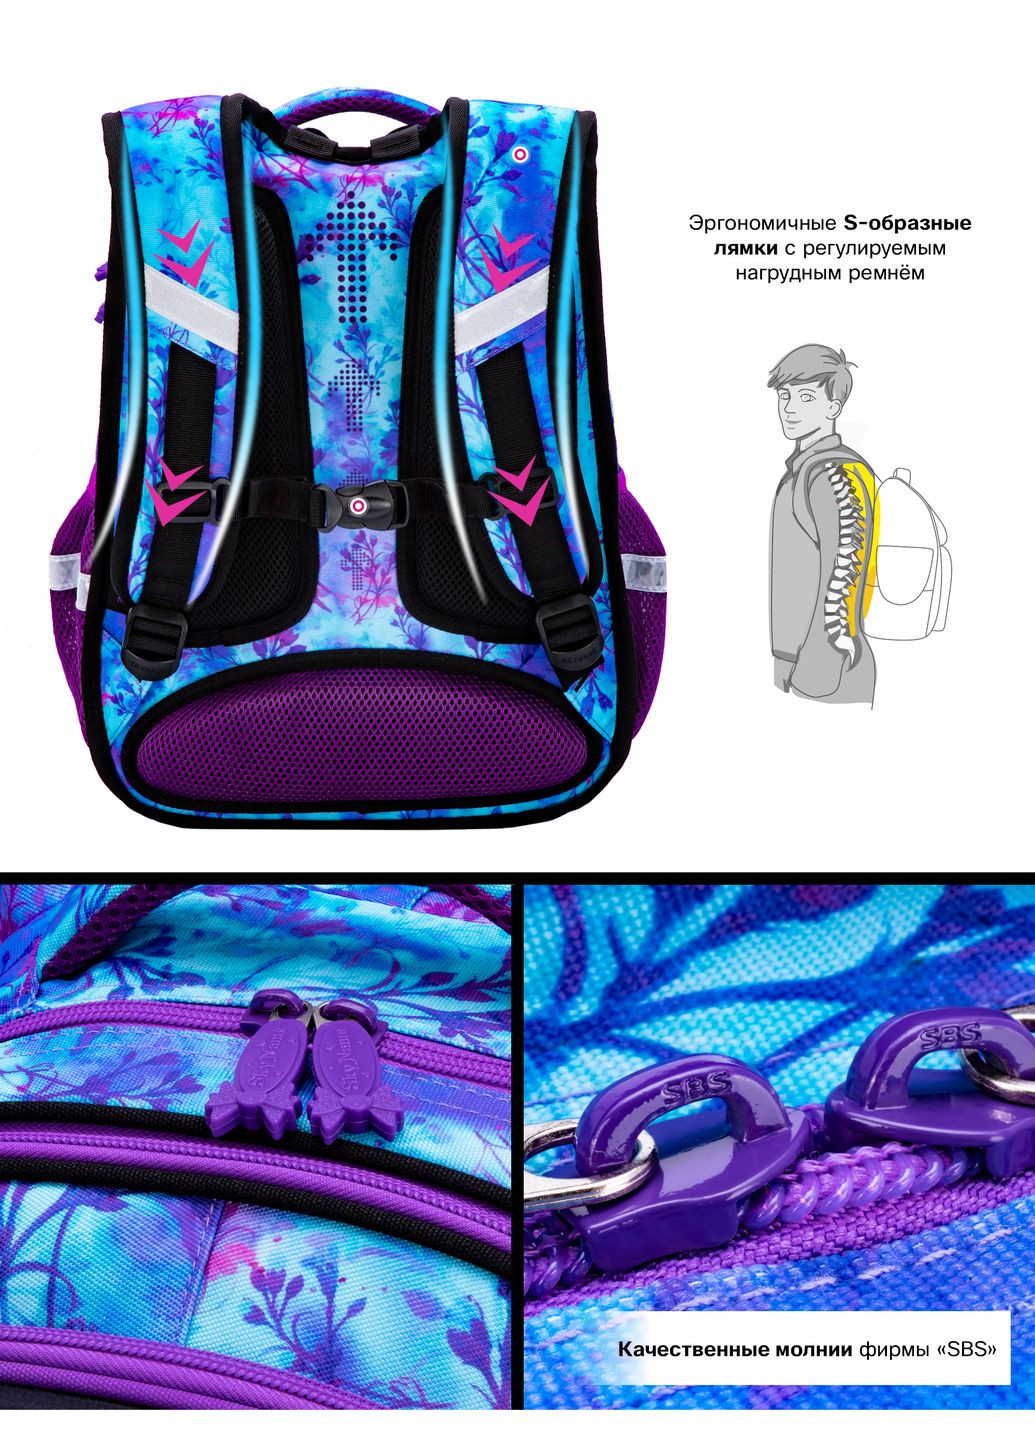 Ортопедический школьный рюкзак для девочки синий с Котиком /SkyName 37х30х16 см для младших классов (R1-023) Winner (293504249)